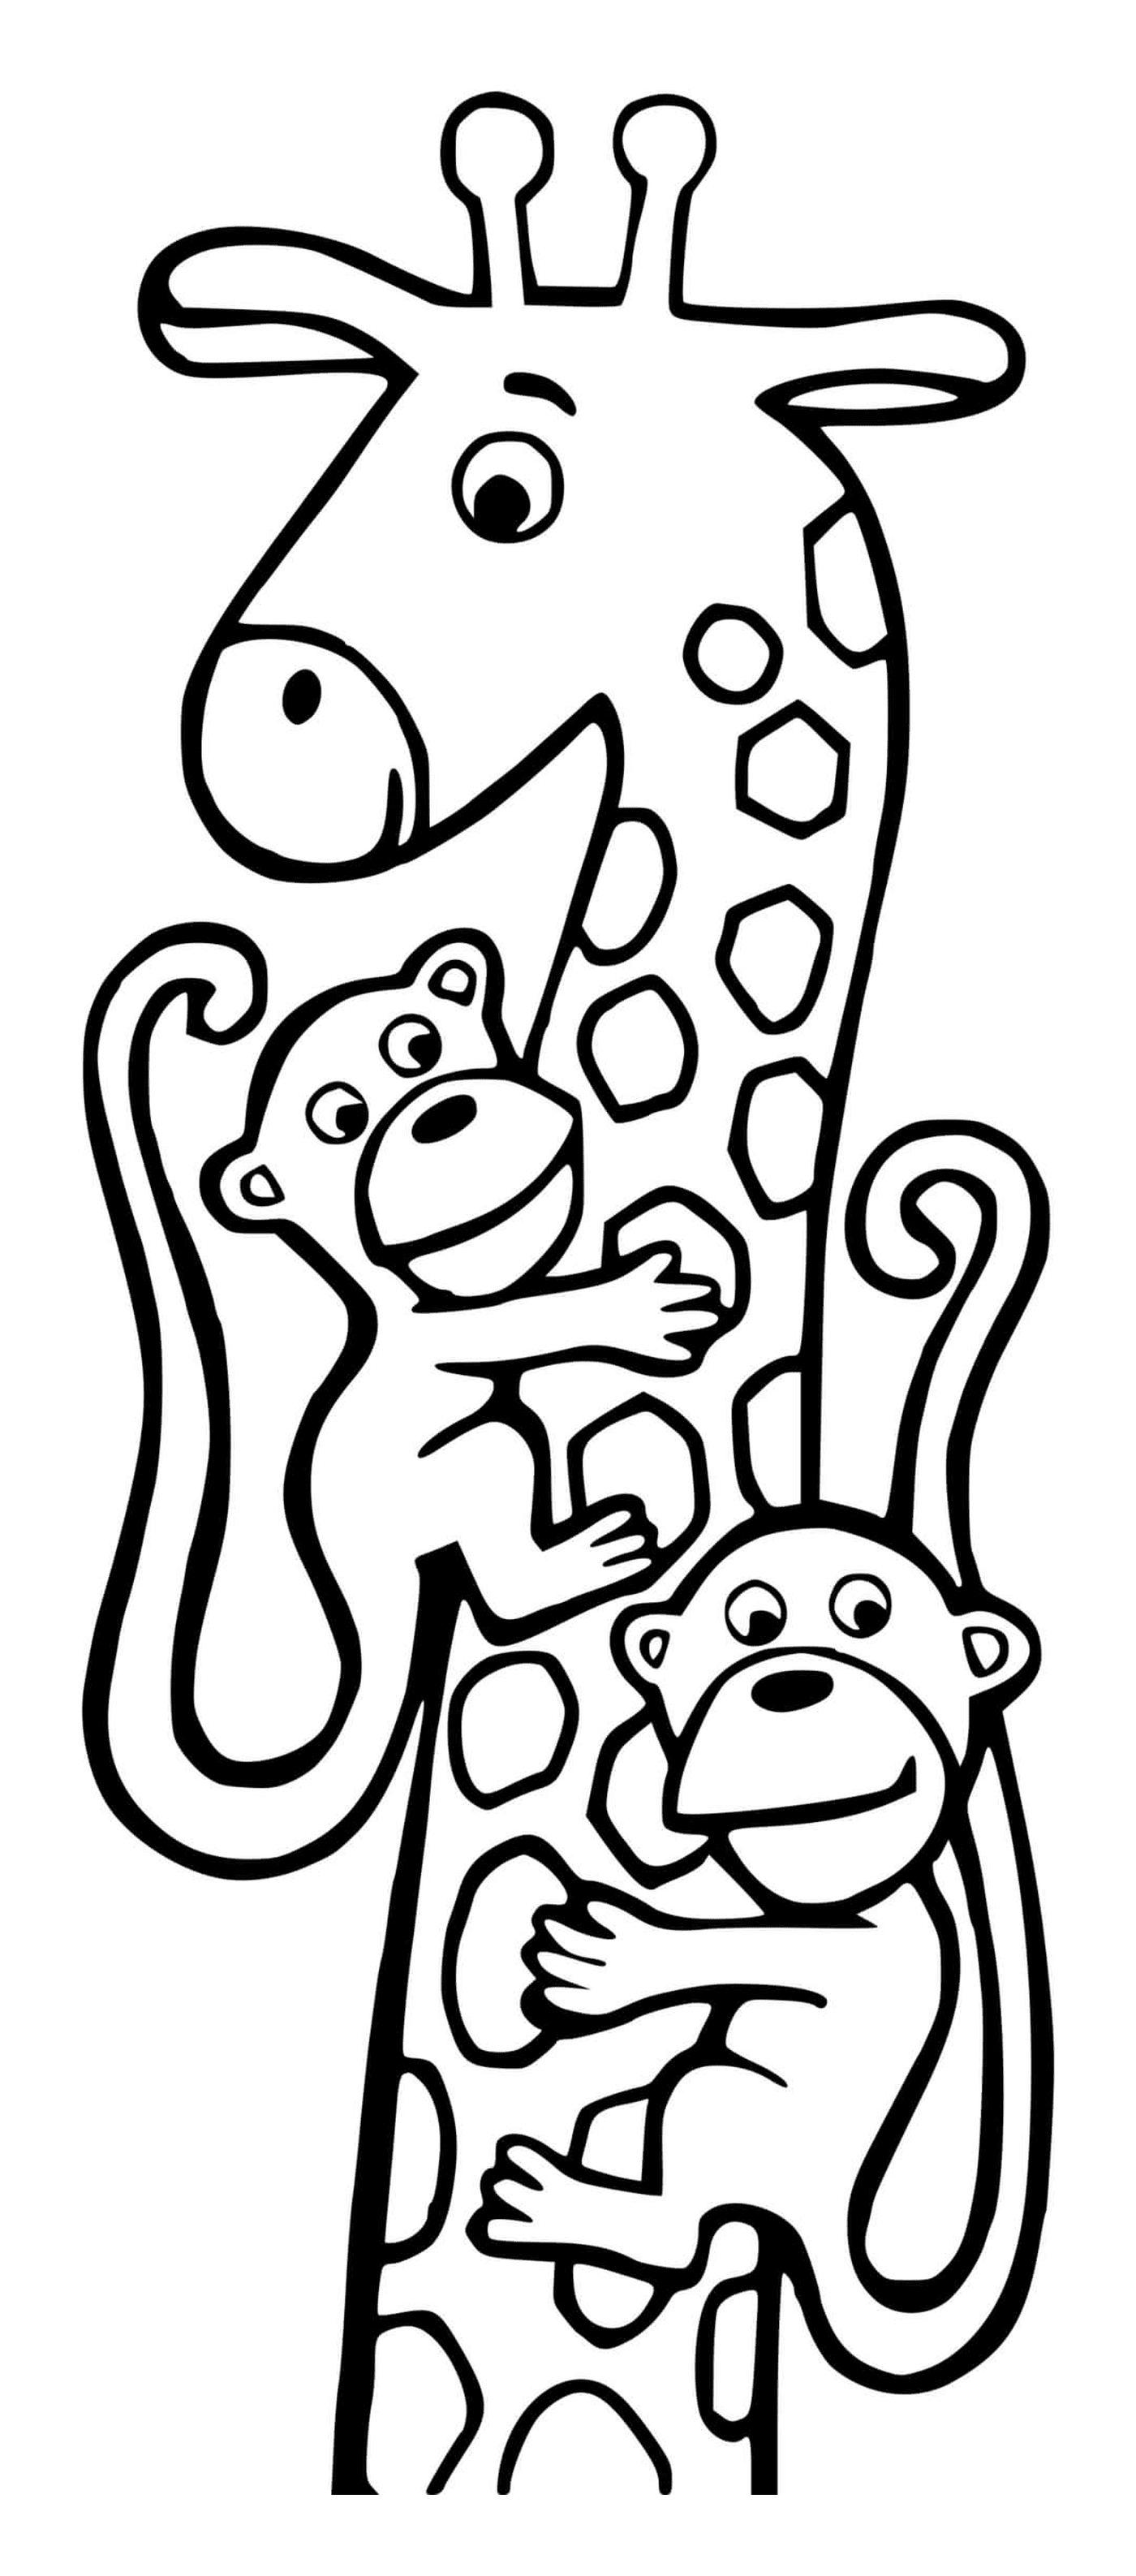   Girafe et deux singes 